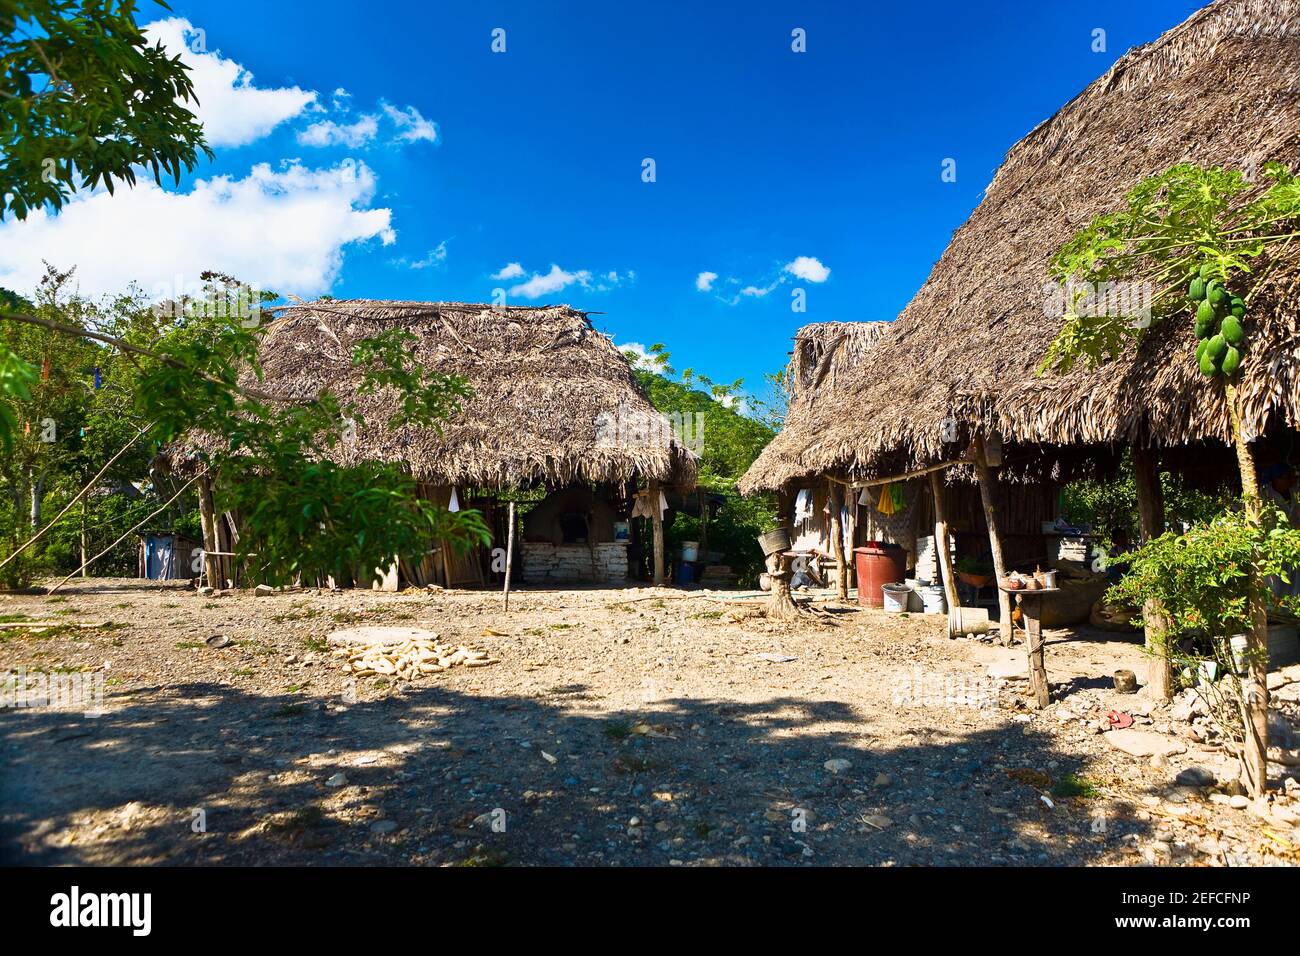 Casas en un pueblo, Hidalgo, Papantla, Veracruz, México Fotografía de stock  - Alamy